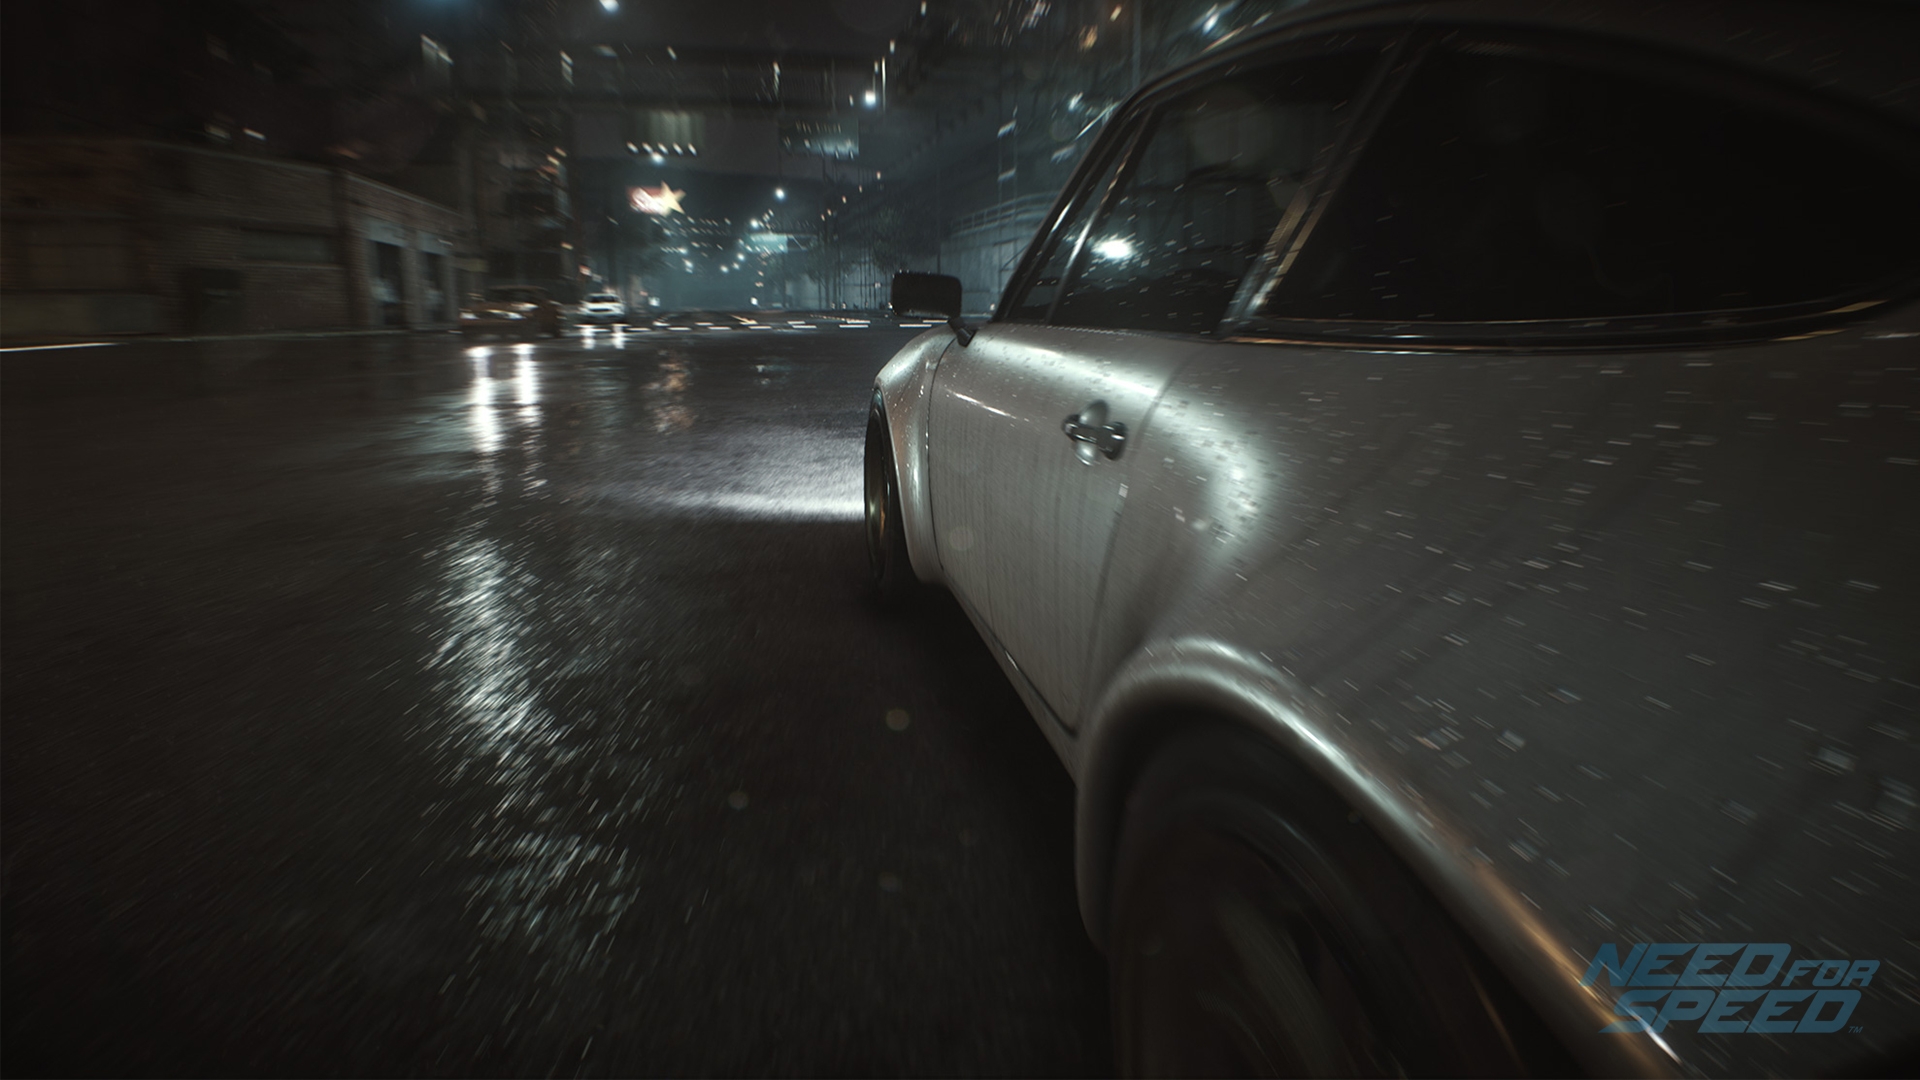 Скриншот из игры Need for Speed (2015) под номером 4